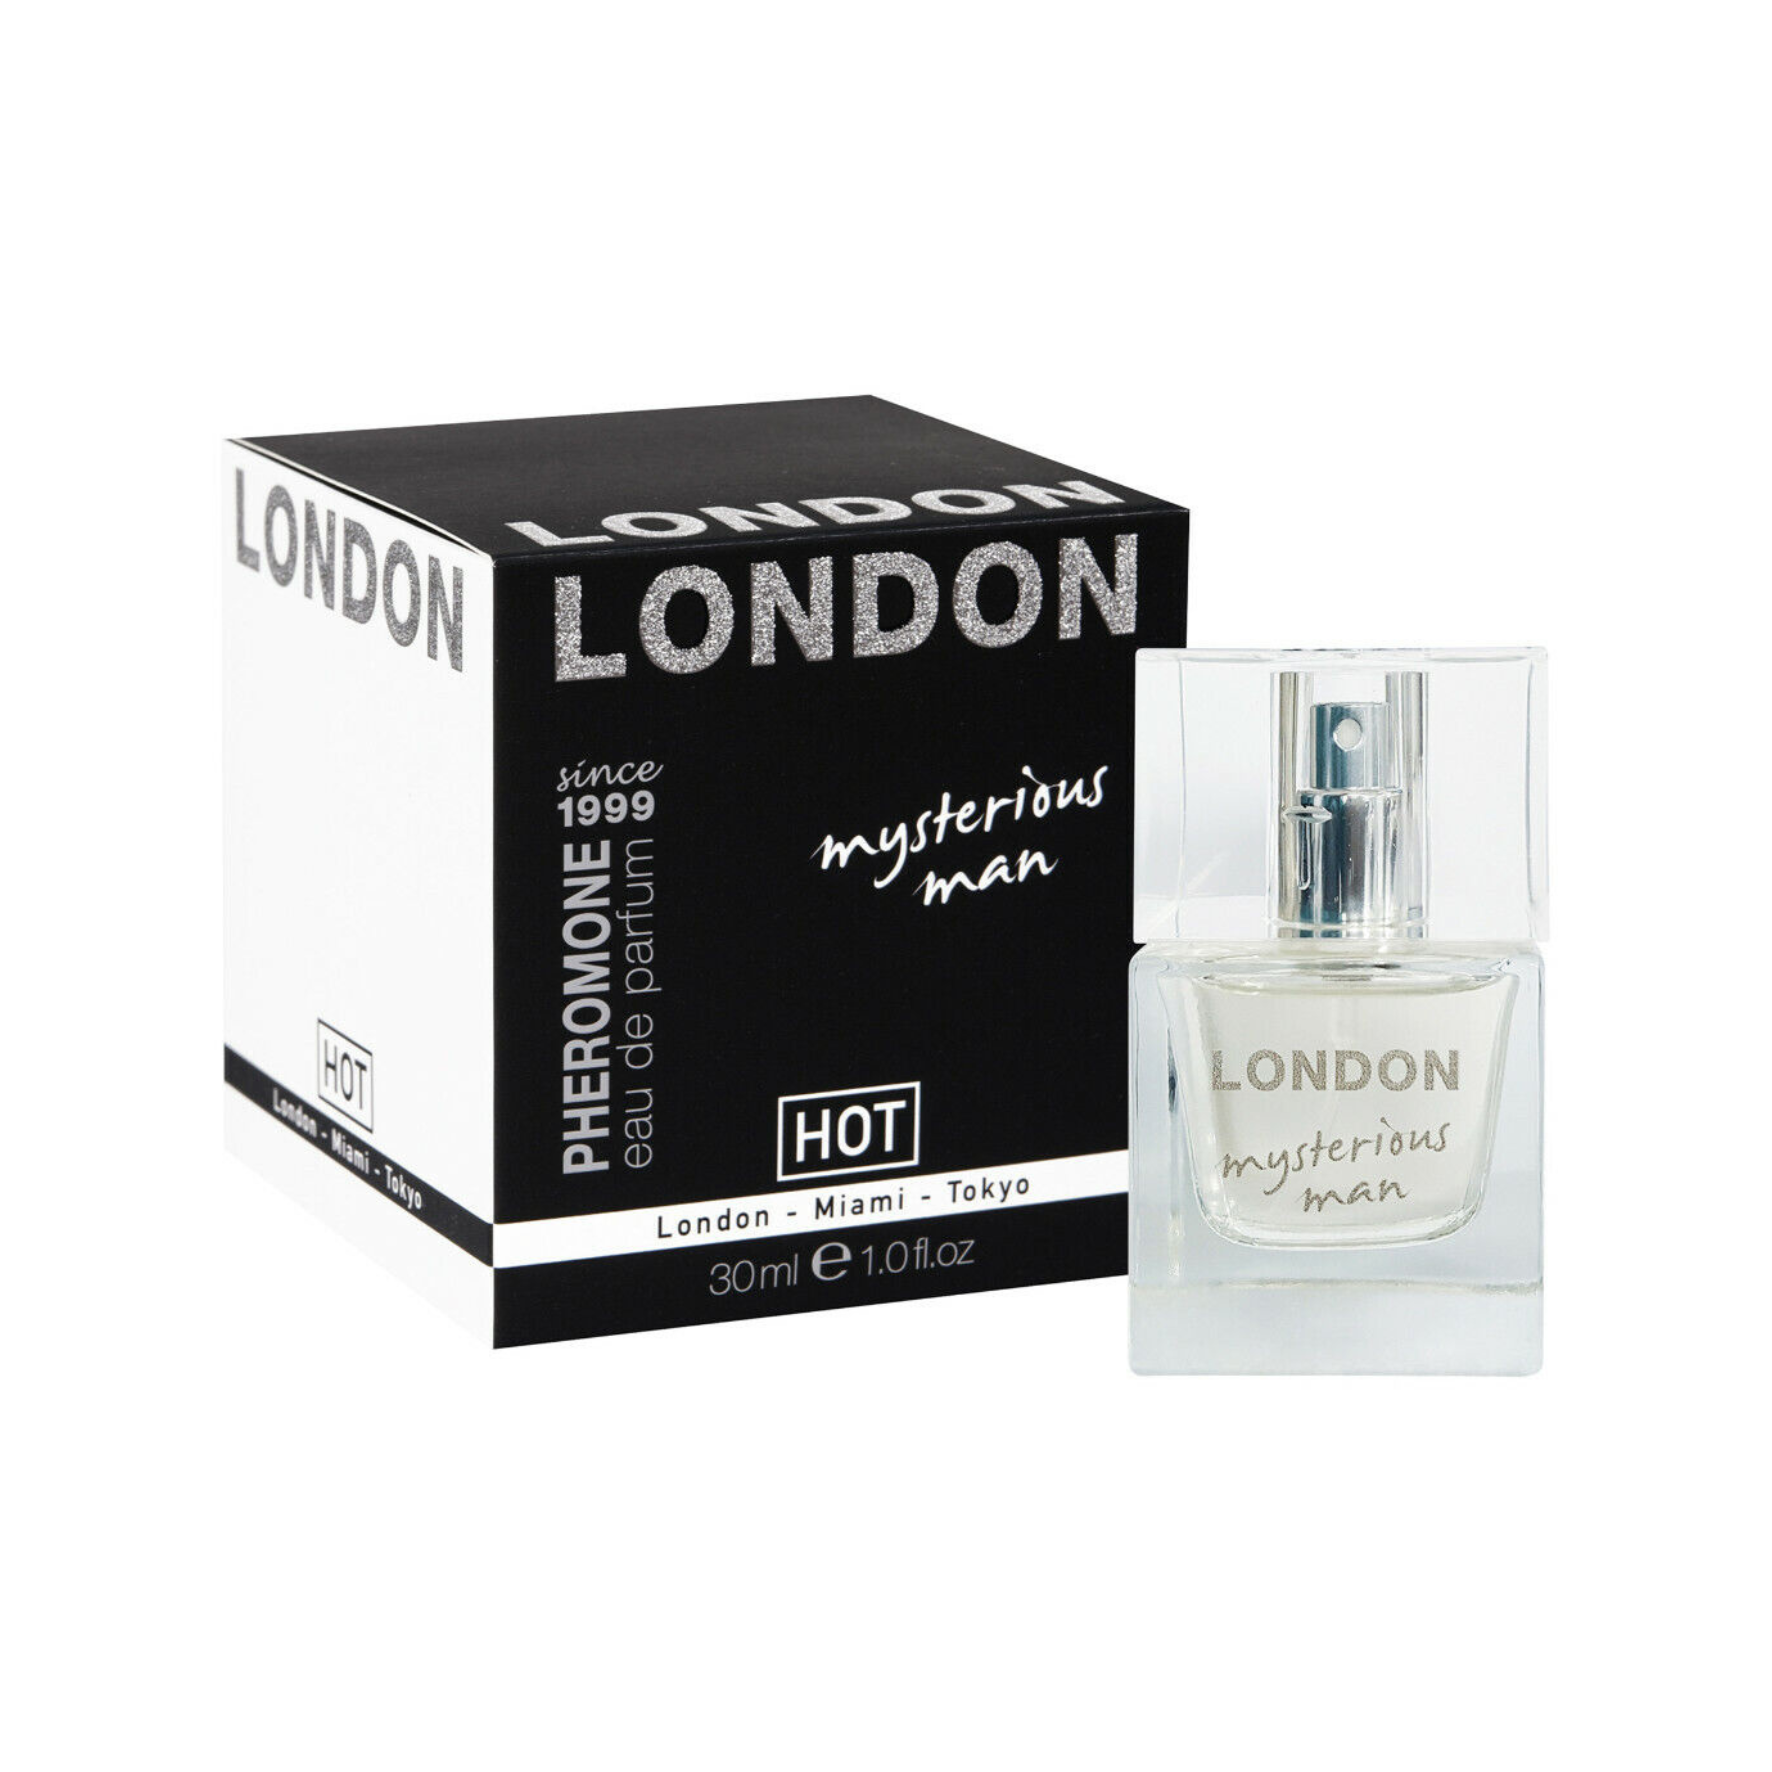 Feromoniniai kvepalai vyrams “HOT London Mysterious Man” - 30 ml